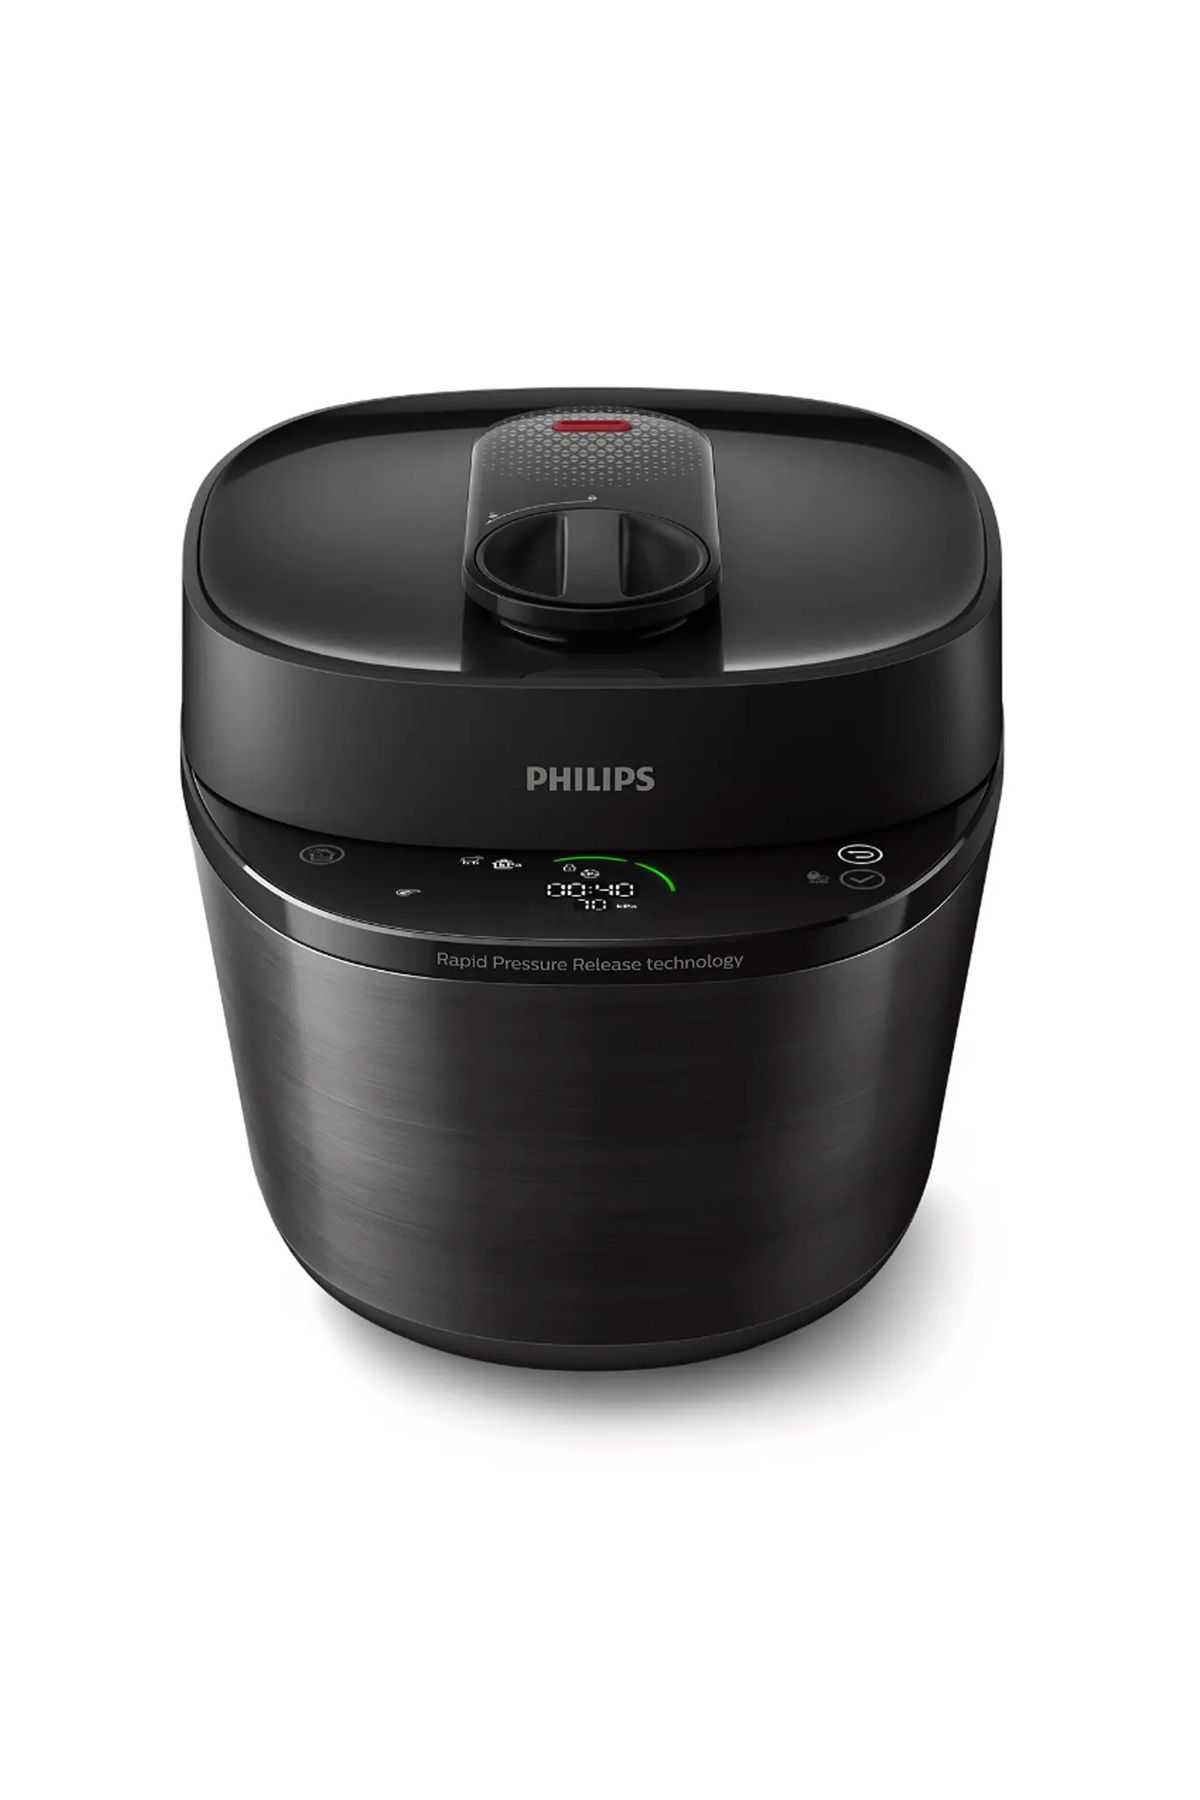 Philips All-in-One Cooker 5 LT Özel NutriU uygulaması Basınçlı Pişirici HD2151